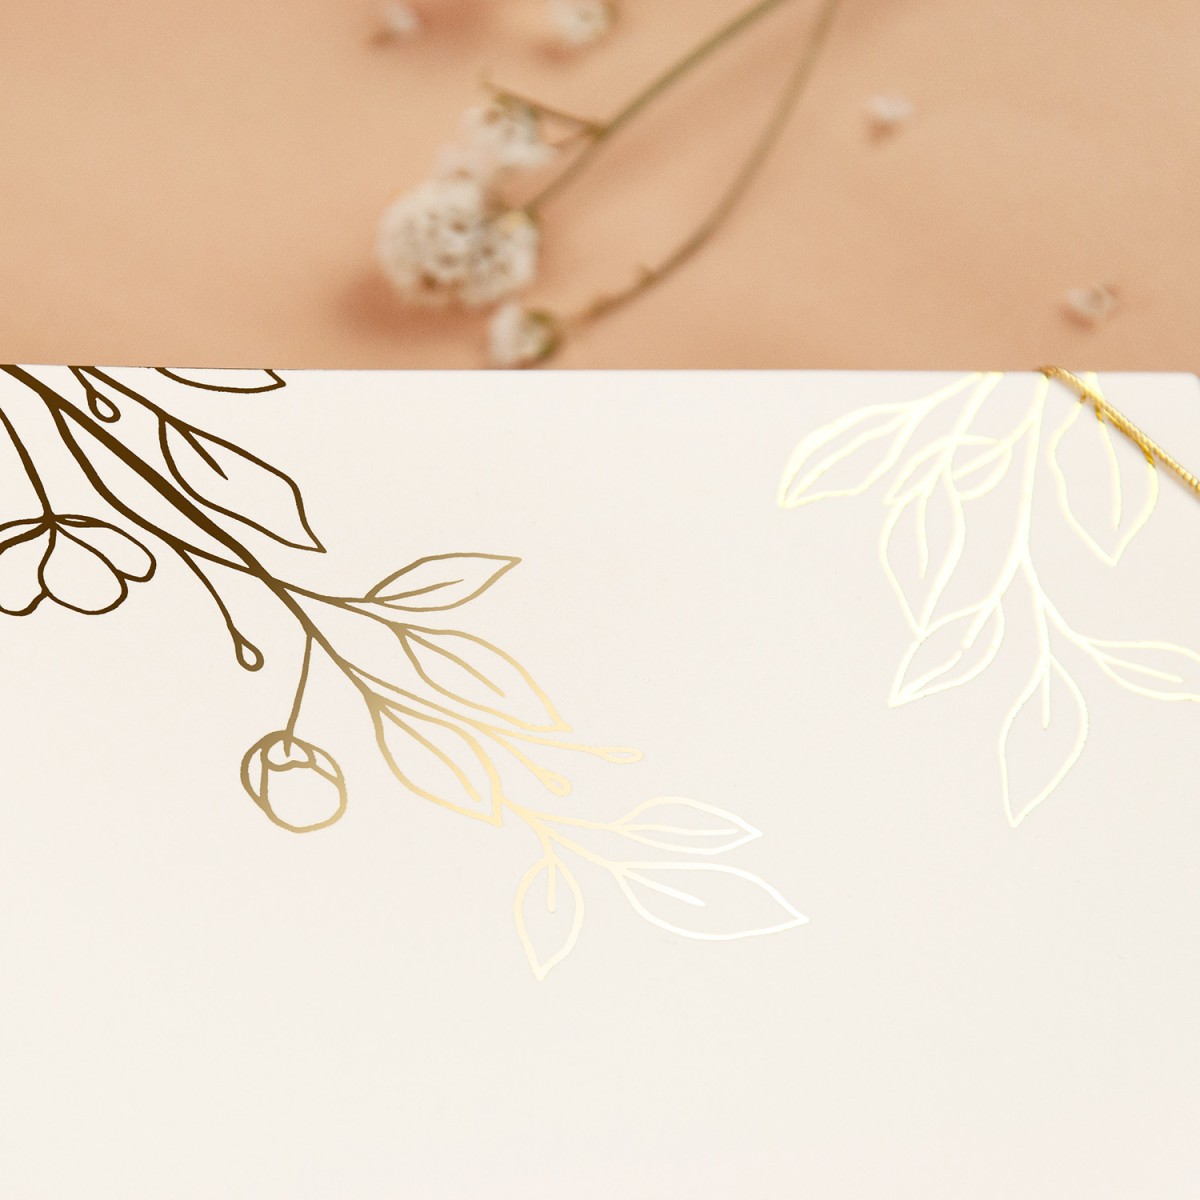 Zaproszenia Ślubne z elegancką kieszonką w kolorze ecru i złotym sznureczkiem - Leaves Ecru Pocket - PRÓBKA